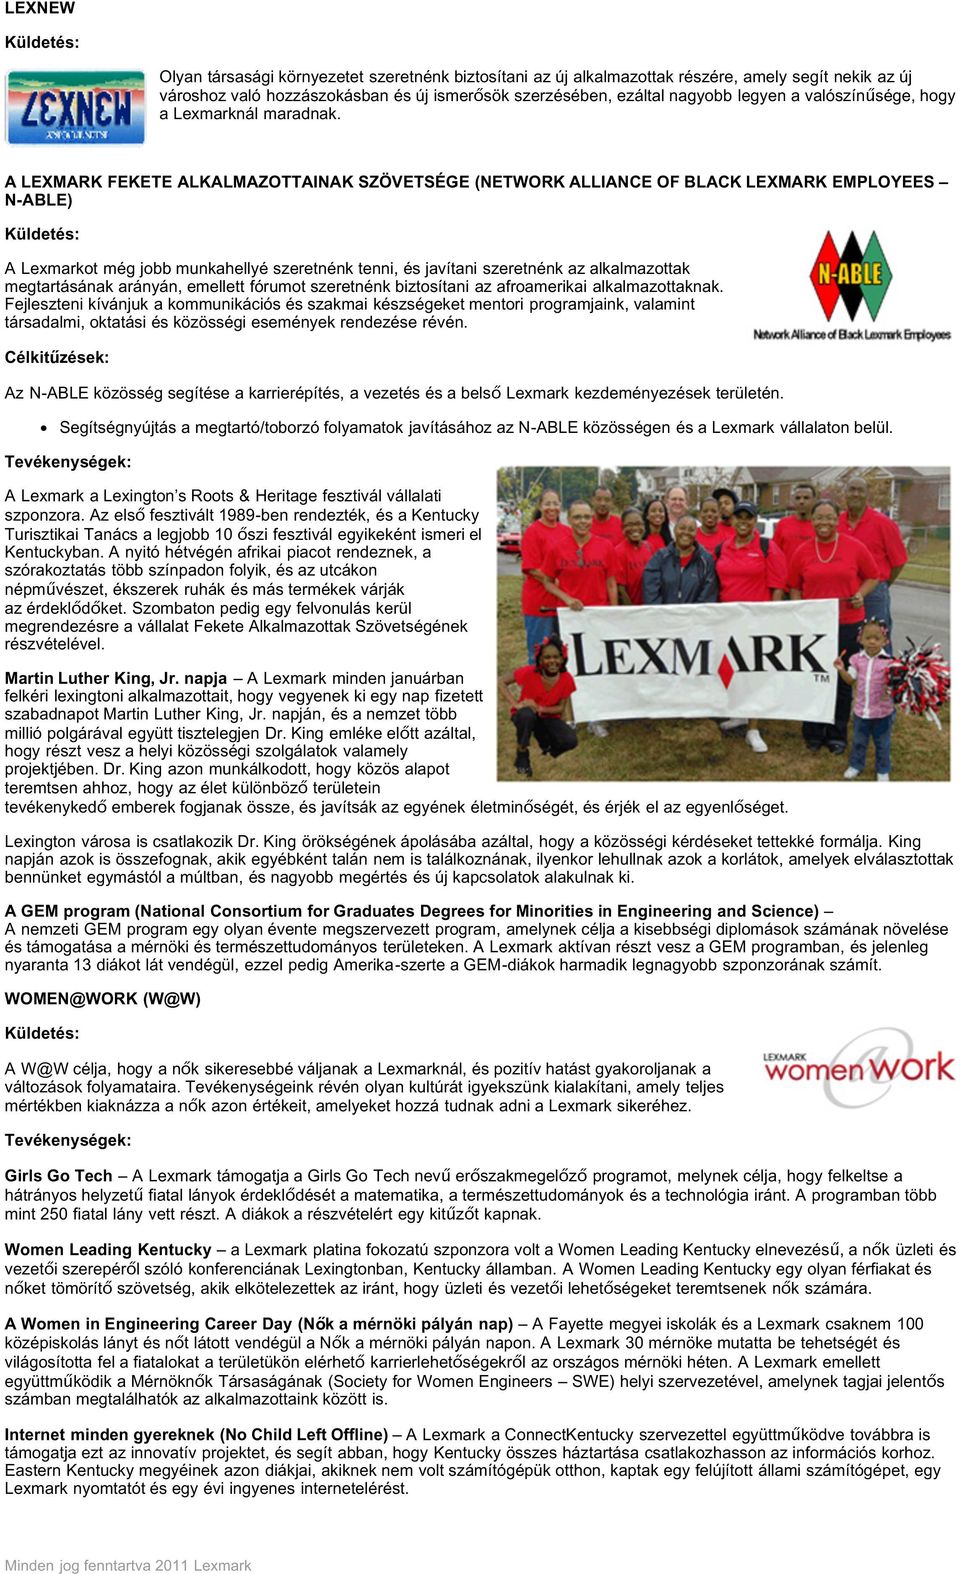 A LEXMARK FEKETE ALKALMAZOTTAINAK SZÖVETSÉGE (NETWORK ALLIANCE OF BLACK LEXMARK EMPLOYEES N-ABLE) Küldetés: A Lexmarkot még jobb munkahellyé szeretnénk tenni, és javítani szeretnénk az alkalmazottak